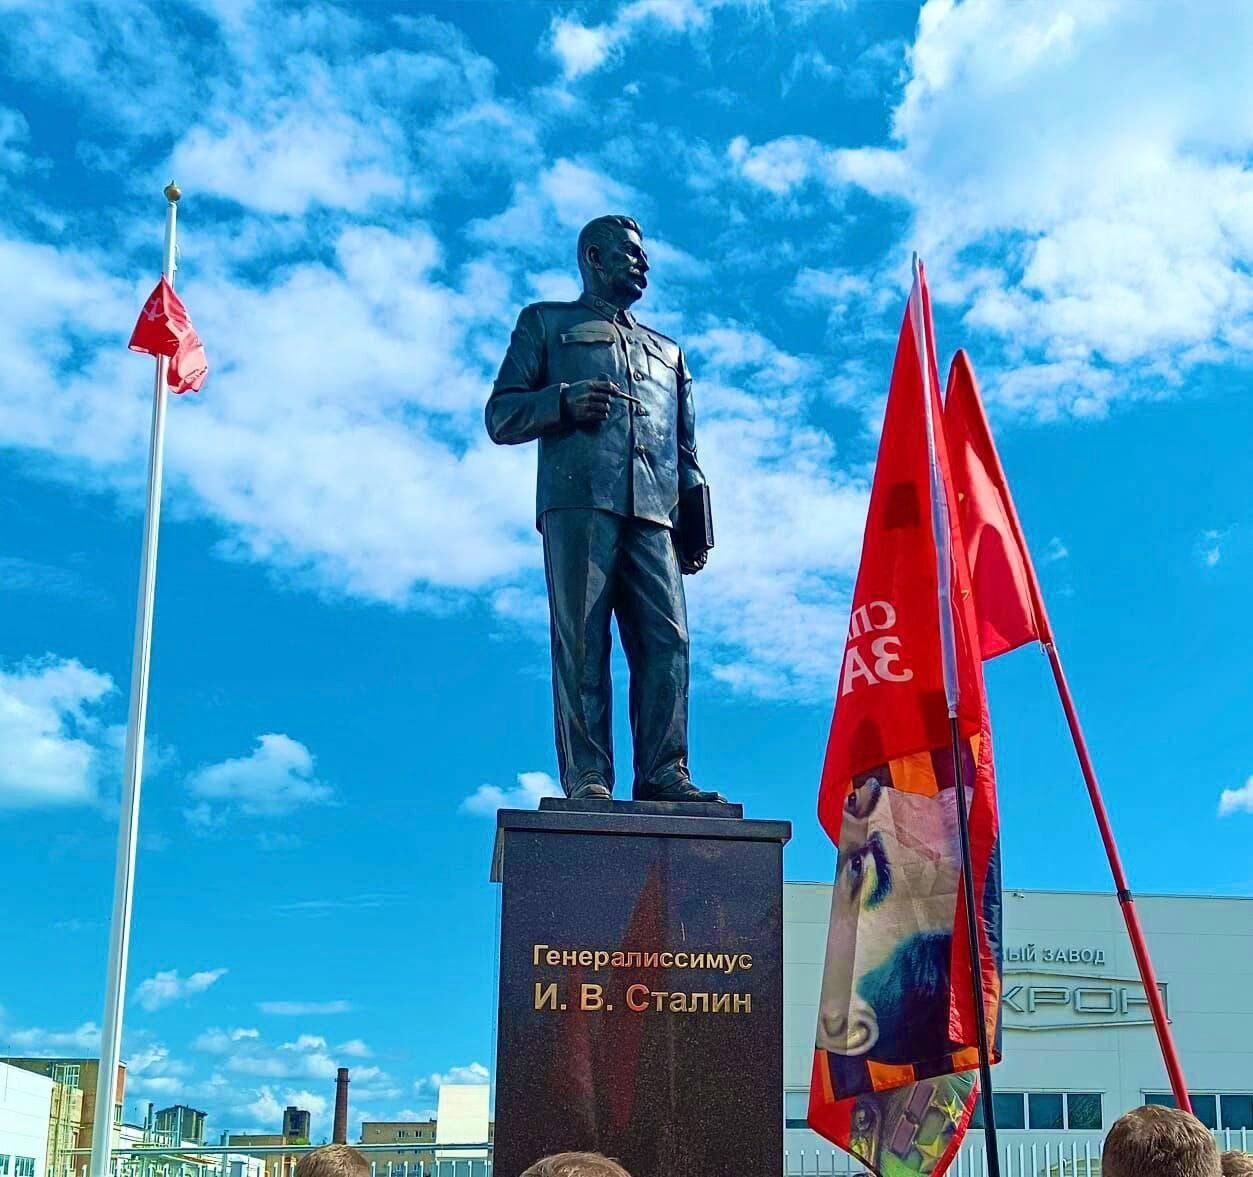 Подробнее о "Епархия проверит освящение памятника Сталину в Великих Луках"